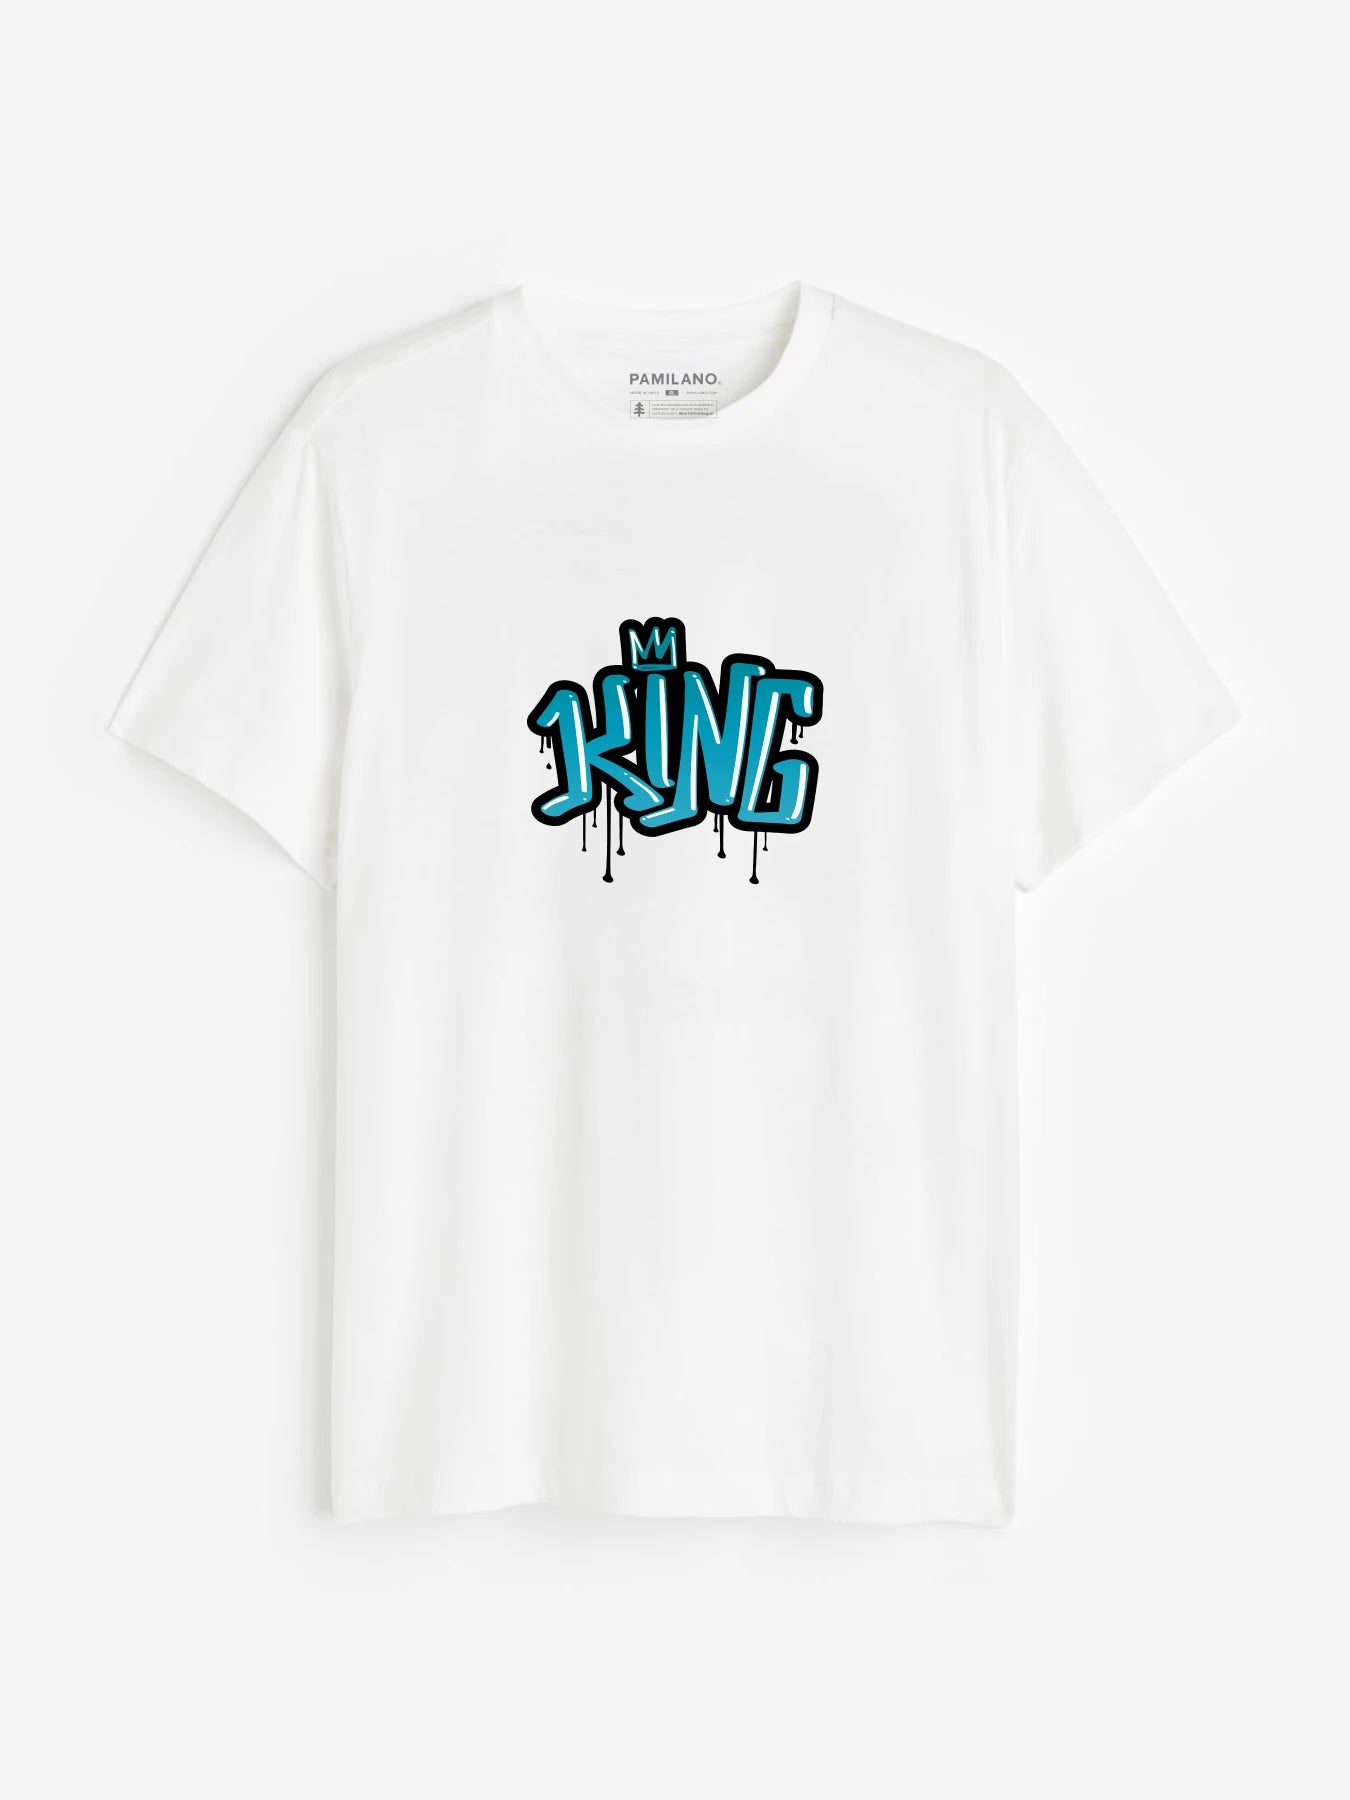 King Queen - Unisex T-Shirt